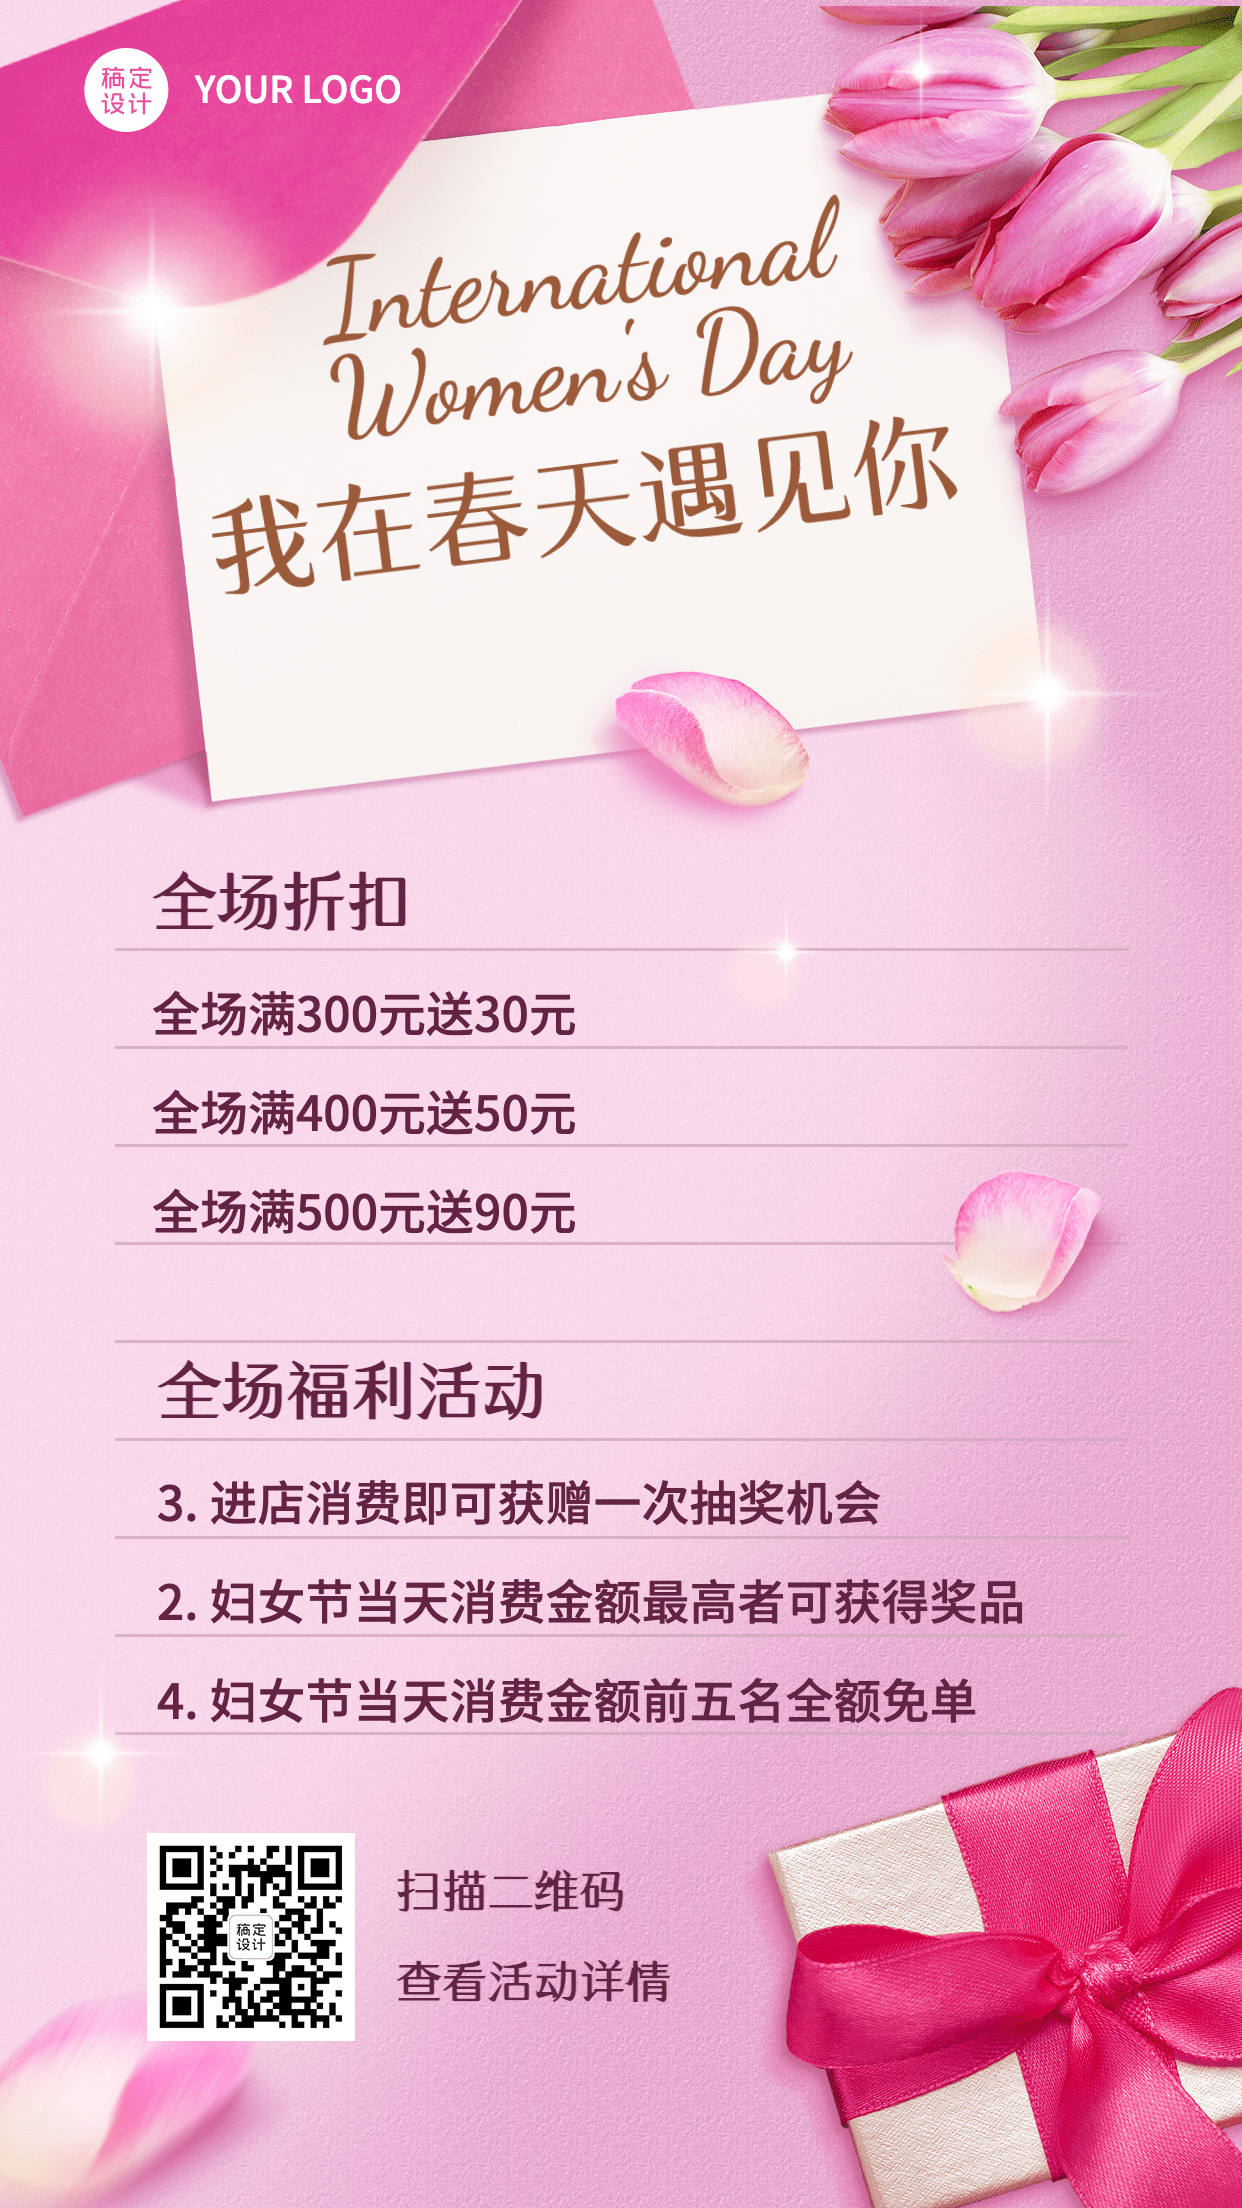 38妇女节女神节促销活动手机海报预览效果